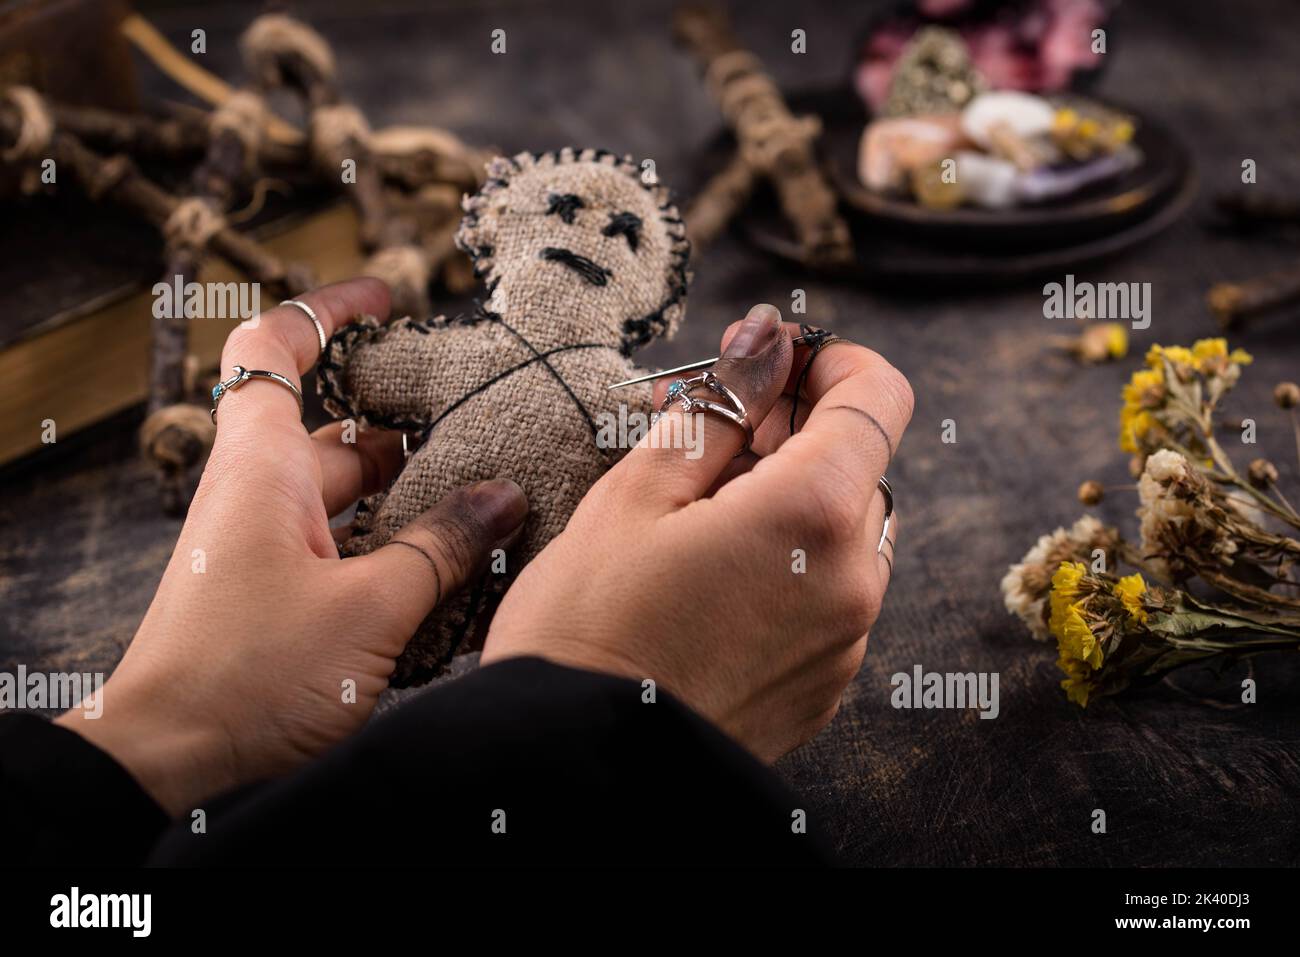 Bambola Voodoo. Rituale esoterico di magia nera. Foto Stock